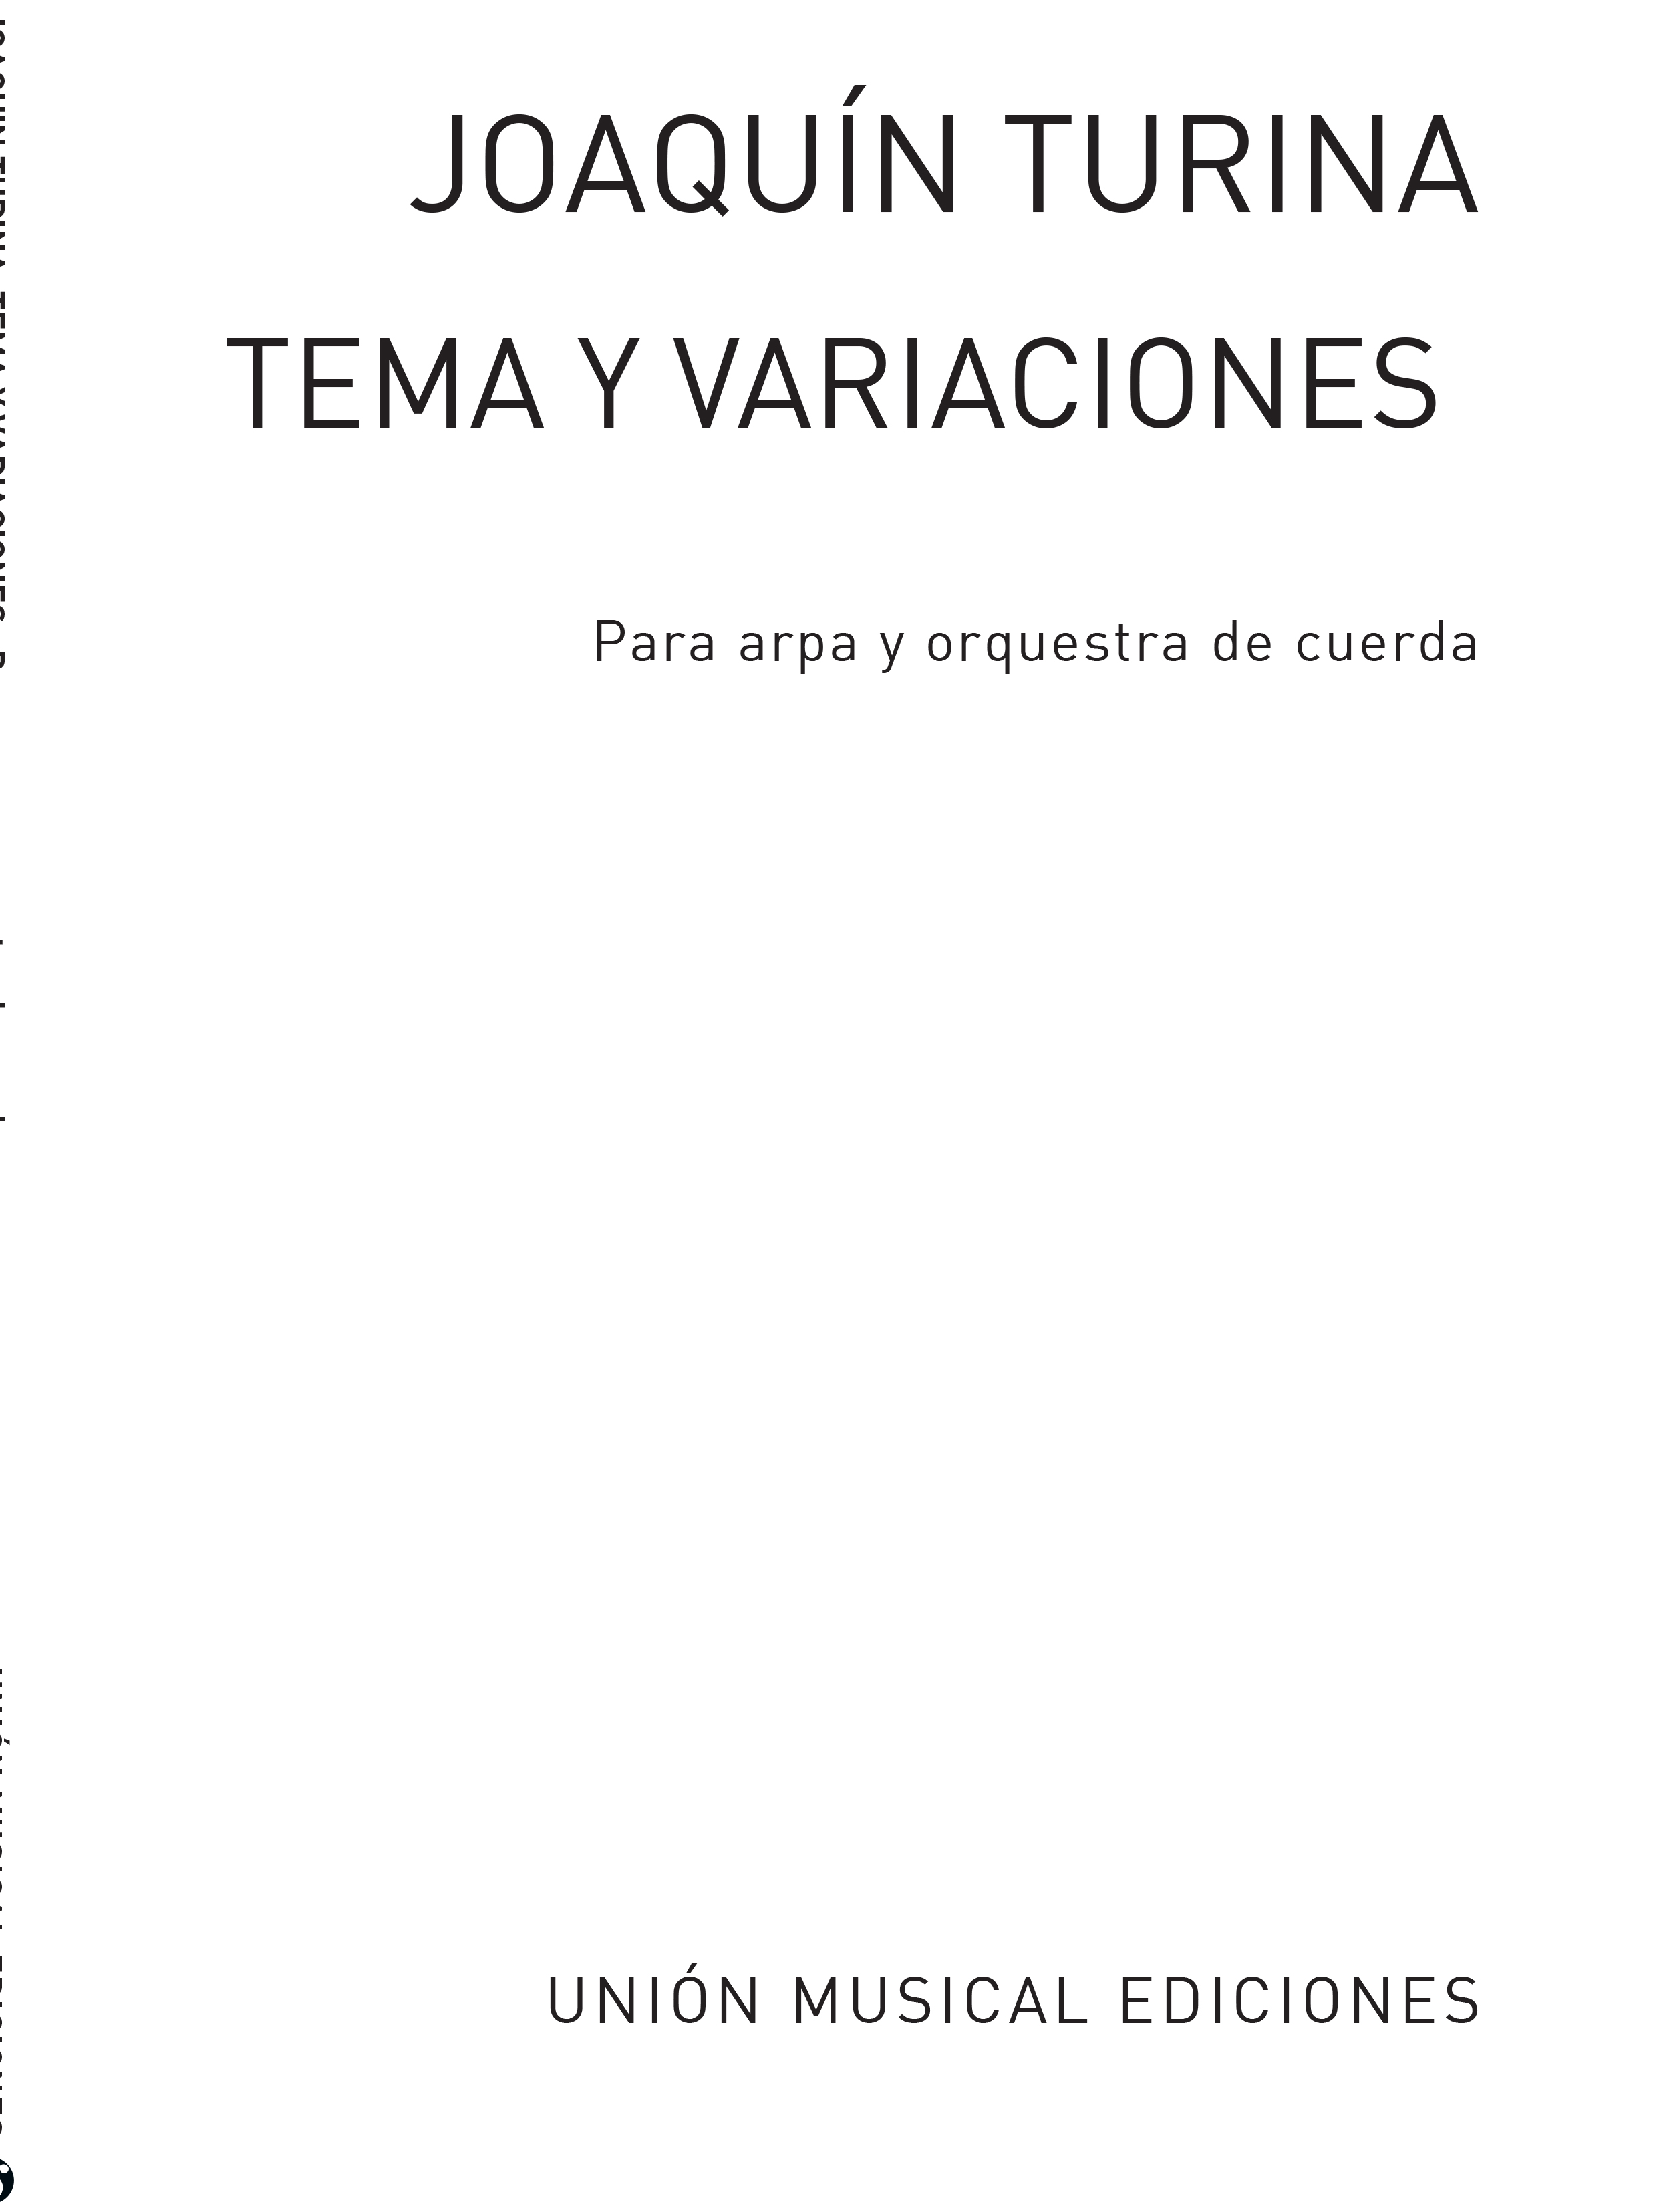 Joaquín Turina Rafael Fruhbeck De Burgos: Tema Y Variaciones Opus 100 Numero 1: